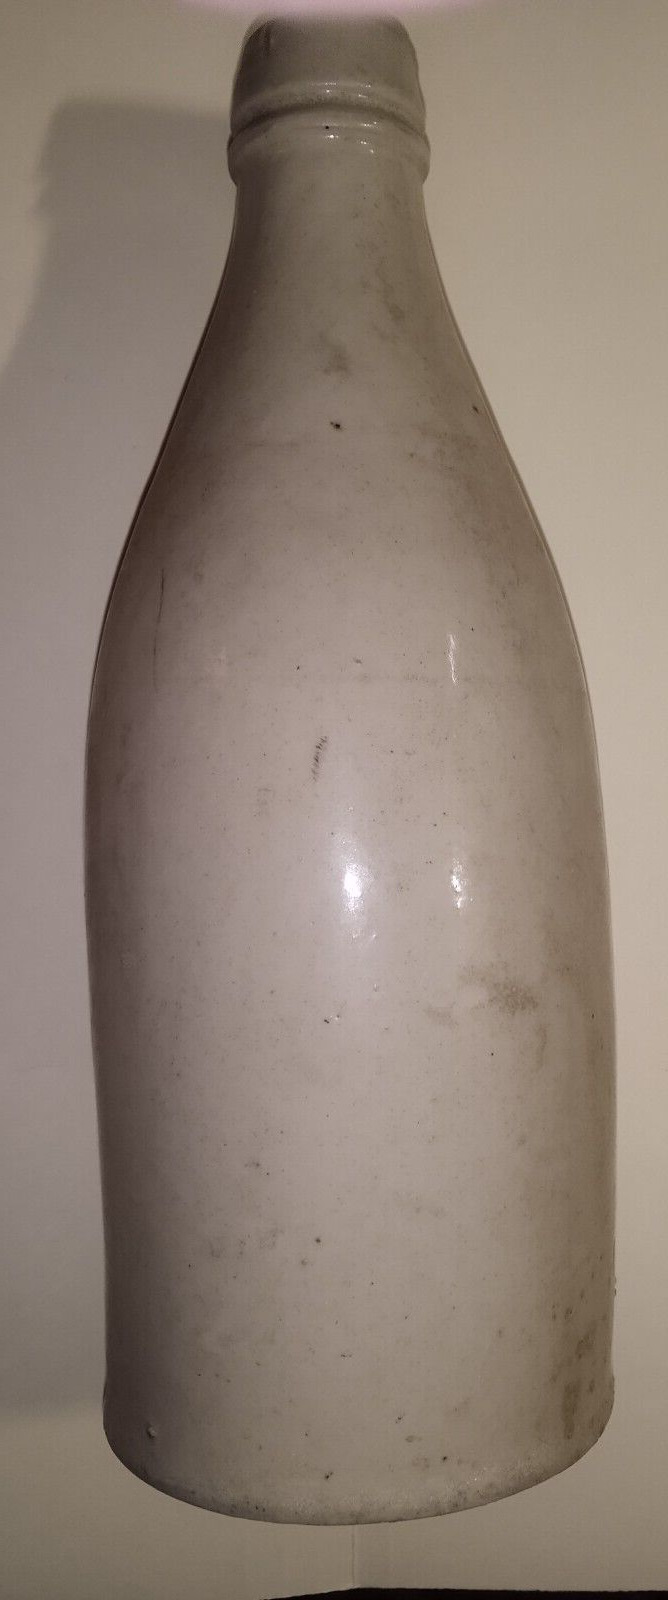 Antique Bottle - Salt Glazed Stoneware, Port Dundas style pottery, no marks